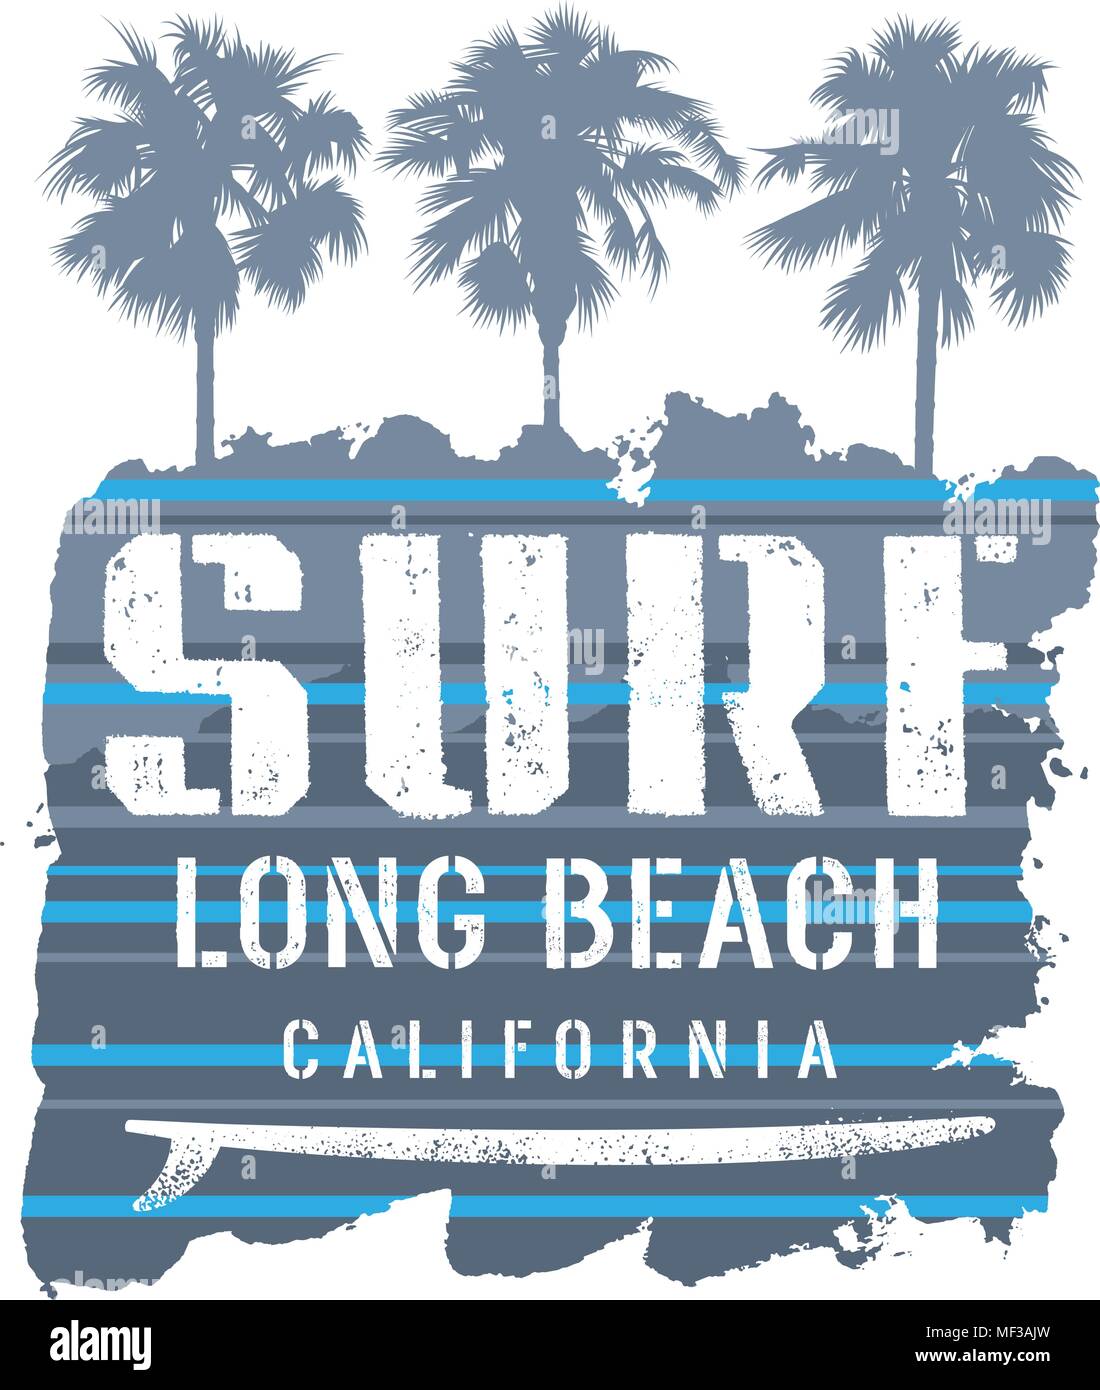 L'oeuvre de surf. Long Beach Californie T-shirt apparel imprimer des graphiques. Vintage Graphic Tee. Vector Illustration sur le thème du surf en Californie Illustration de Vecteur